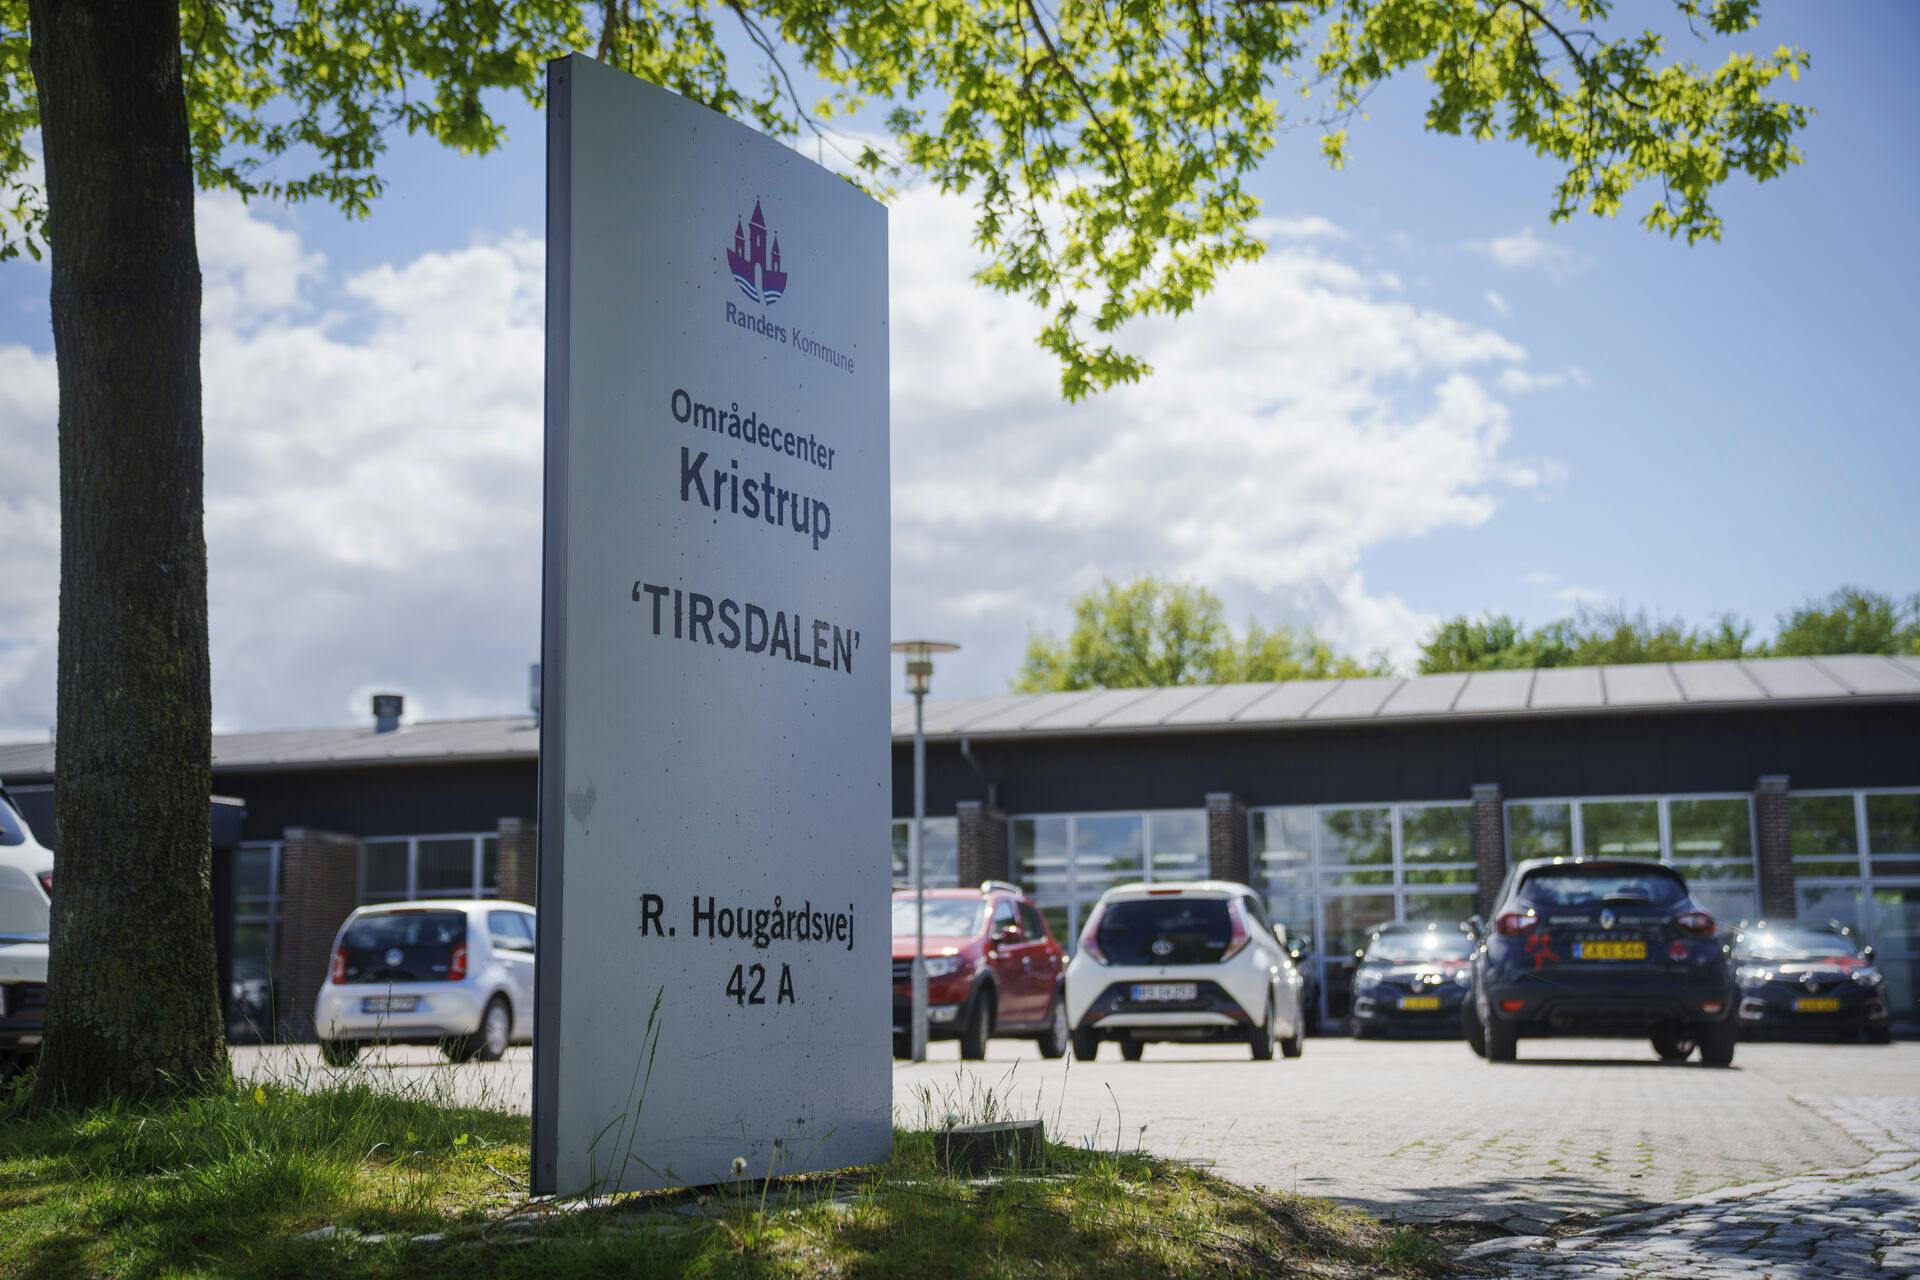 Det er her på Plejecenter Tirsdalen i Randers, at politiet mener både drabet og drabsforsøgene er sket.